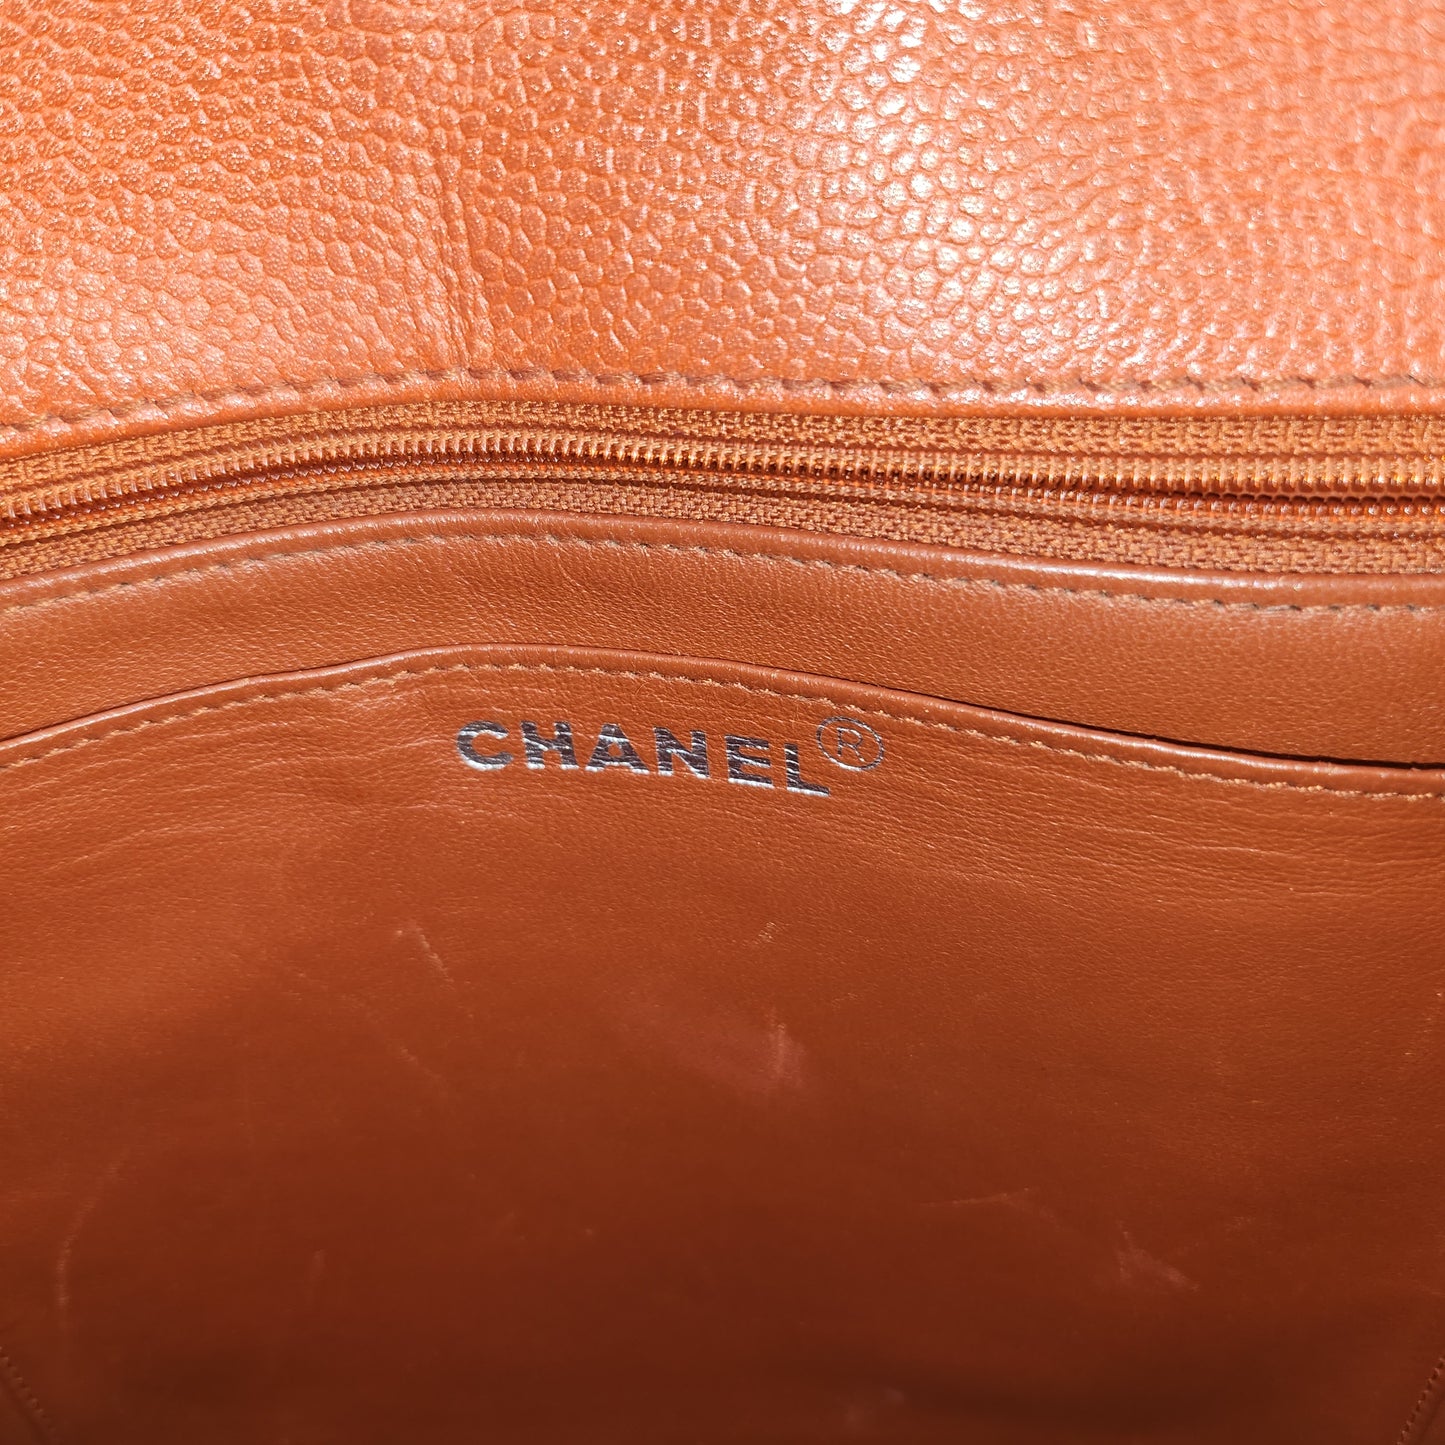 Chanel Matelasse Caviar Leather Shoulder Bag